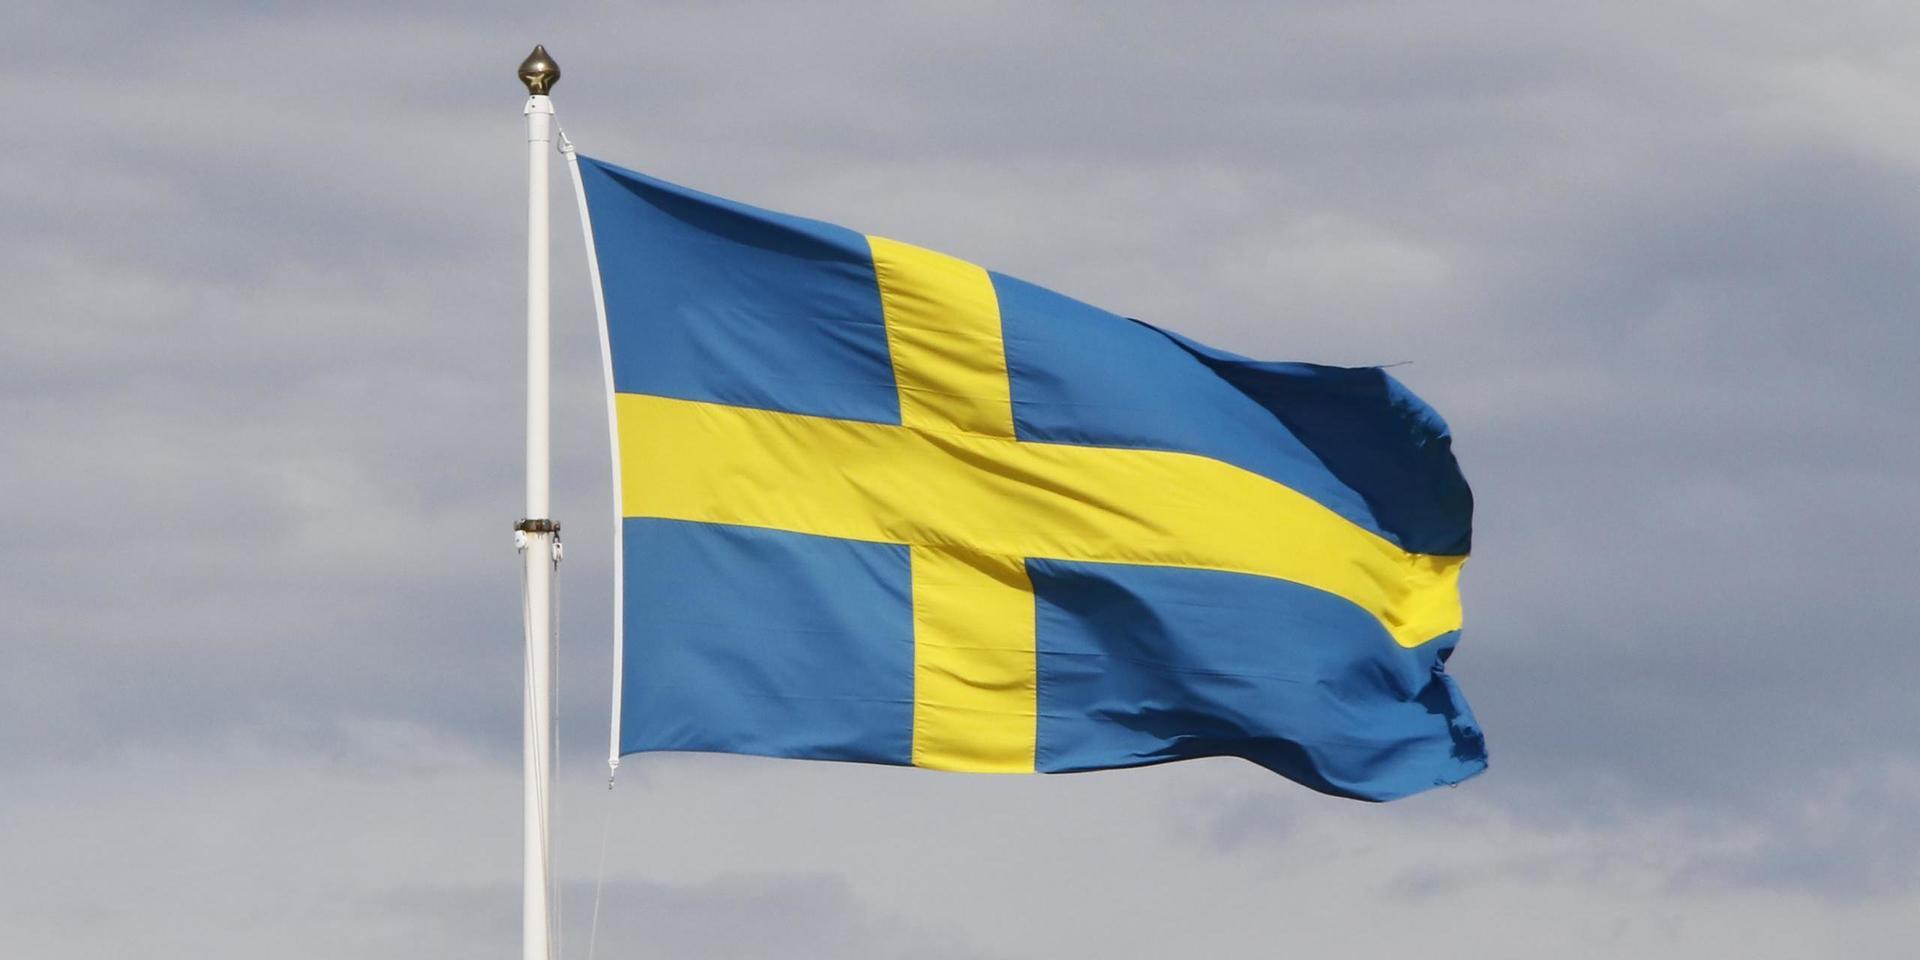 Redan vid Eriksbergs köpcenter på Hisingen noterar jag att ingen av dess många flaggstänger har den svenska flaggan uppe, skriver insändaren.